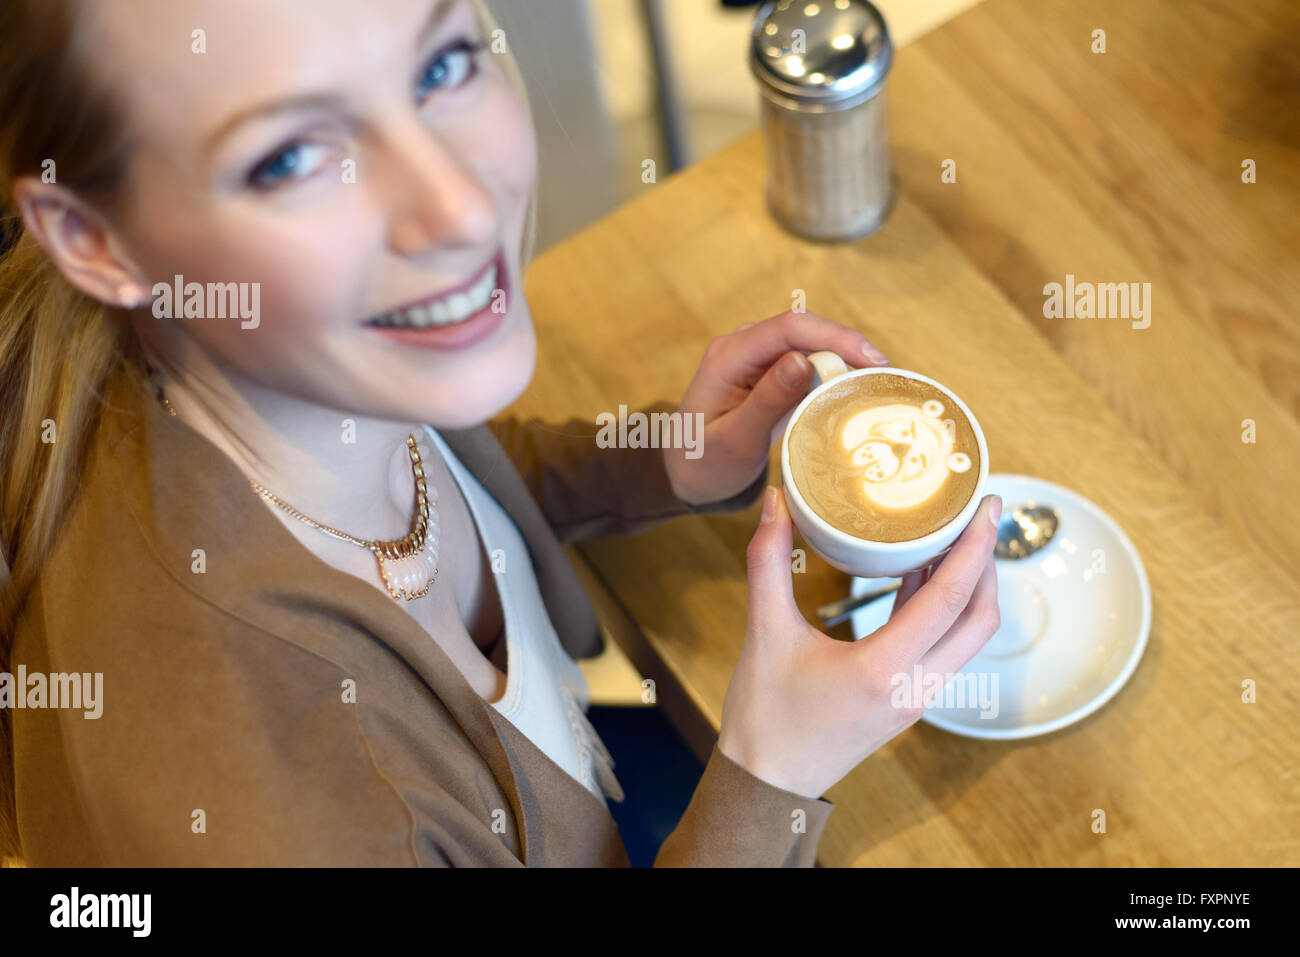 Vue de dessus de smiling blonde femme assise dans un bar avec un cappuccino en face d'elle Banque D'Images